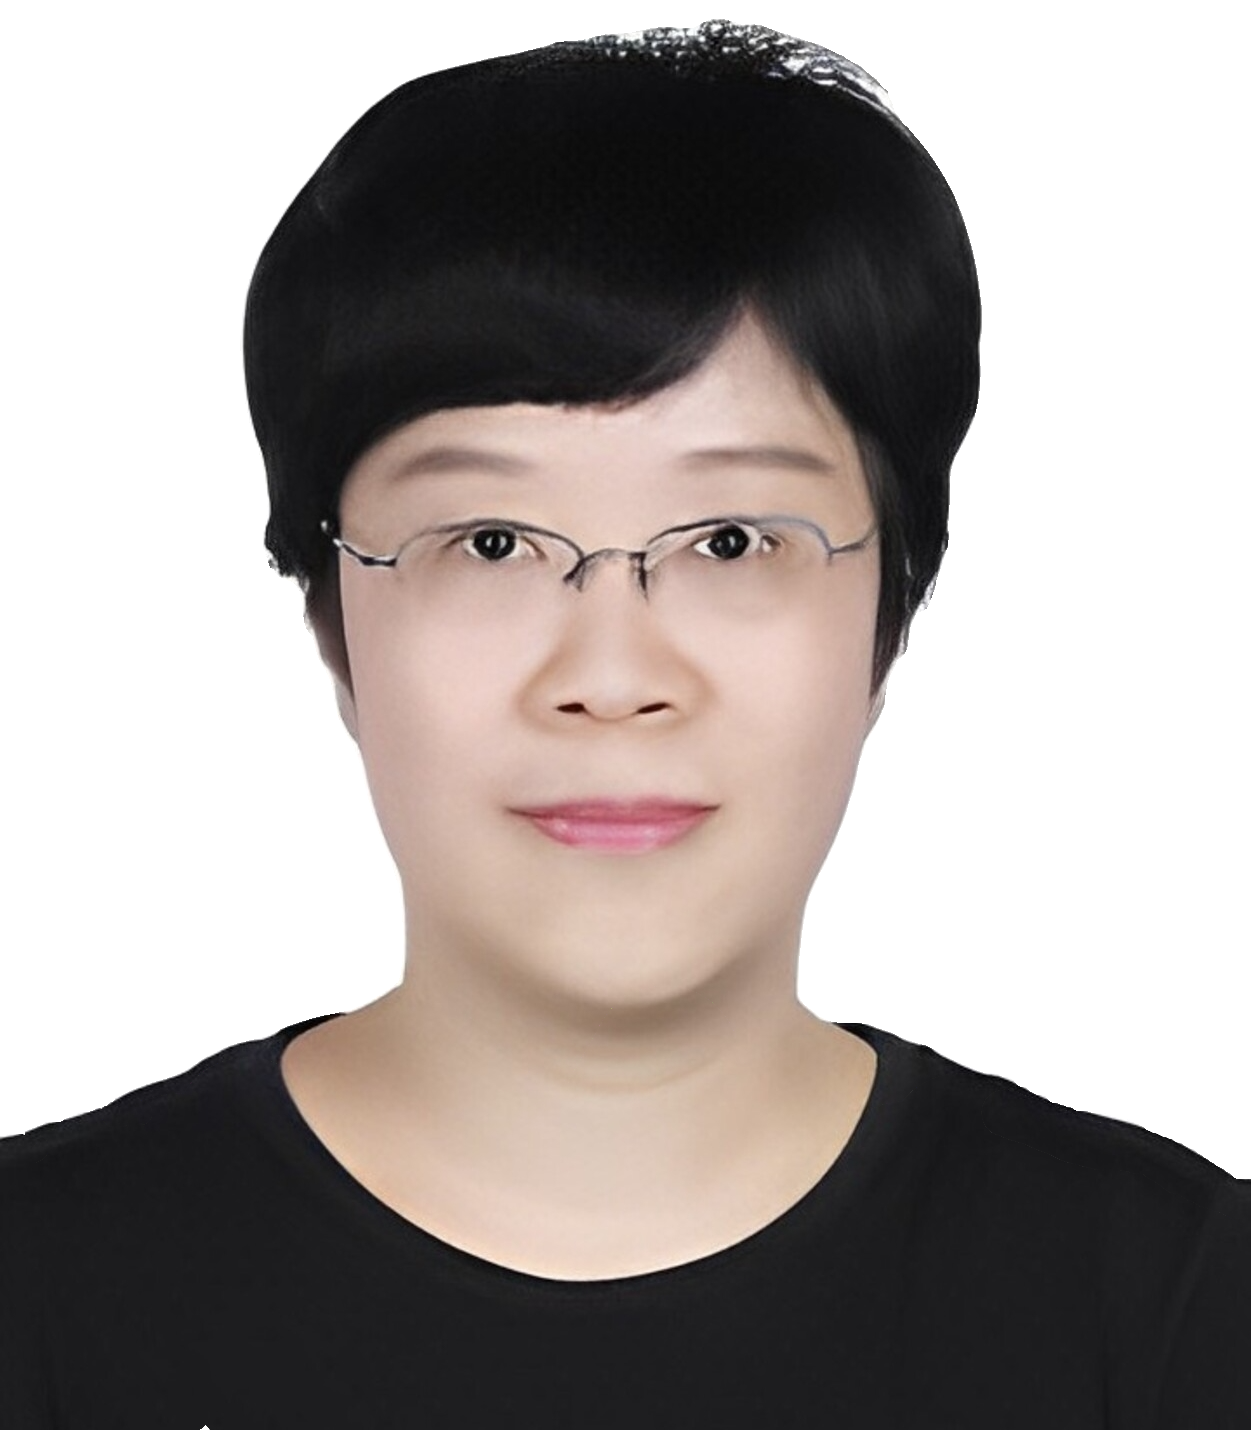 Ms. Li Zhou